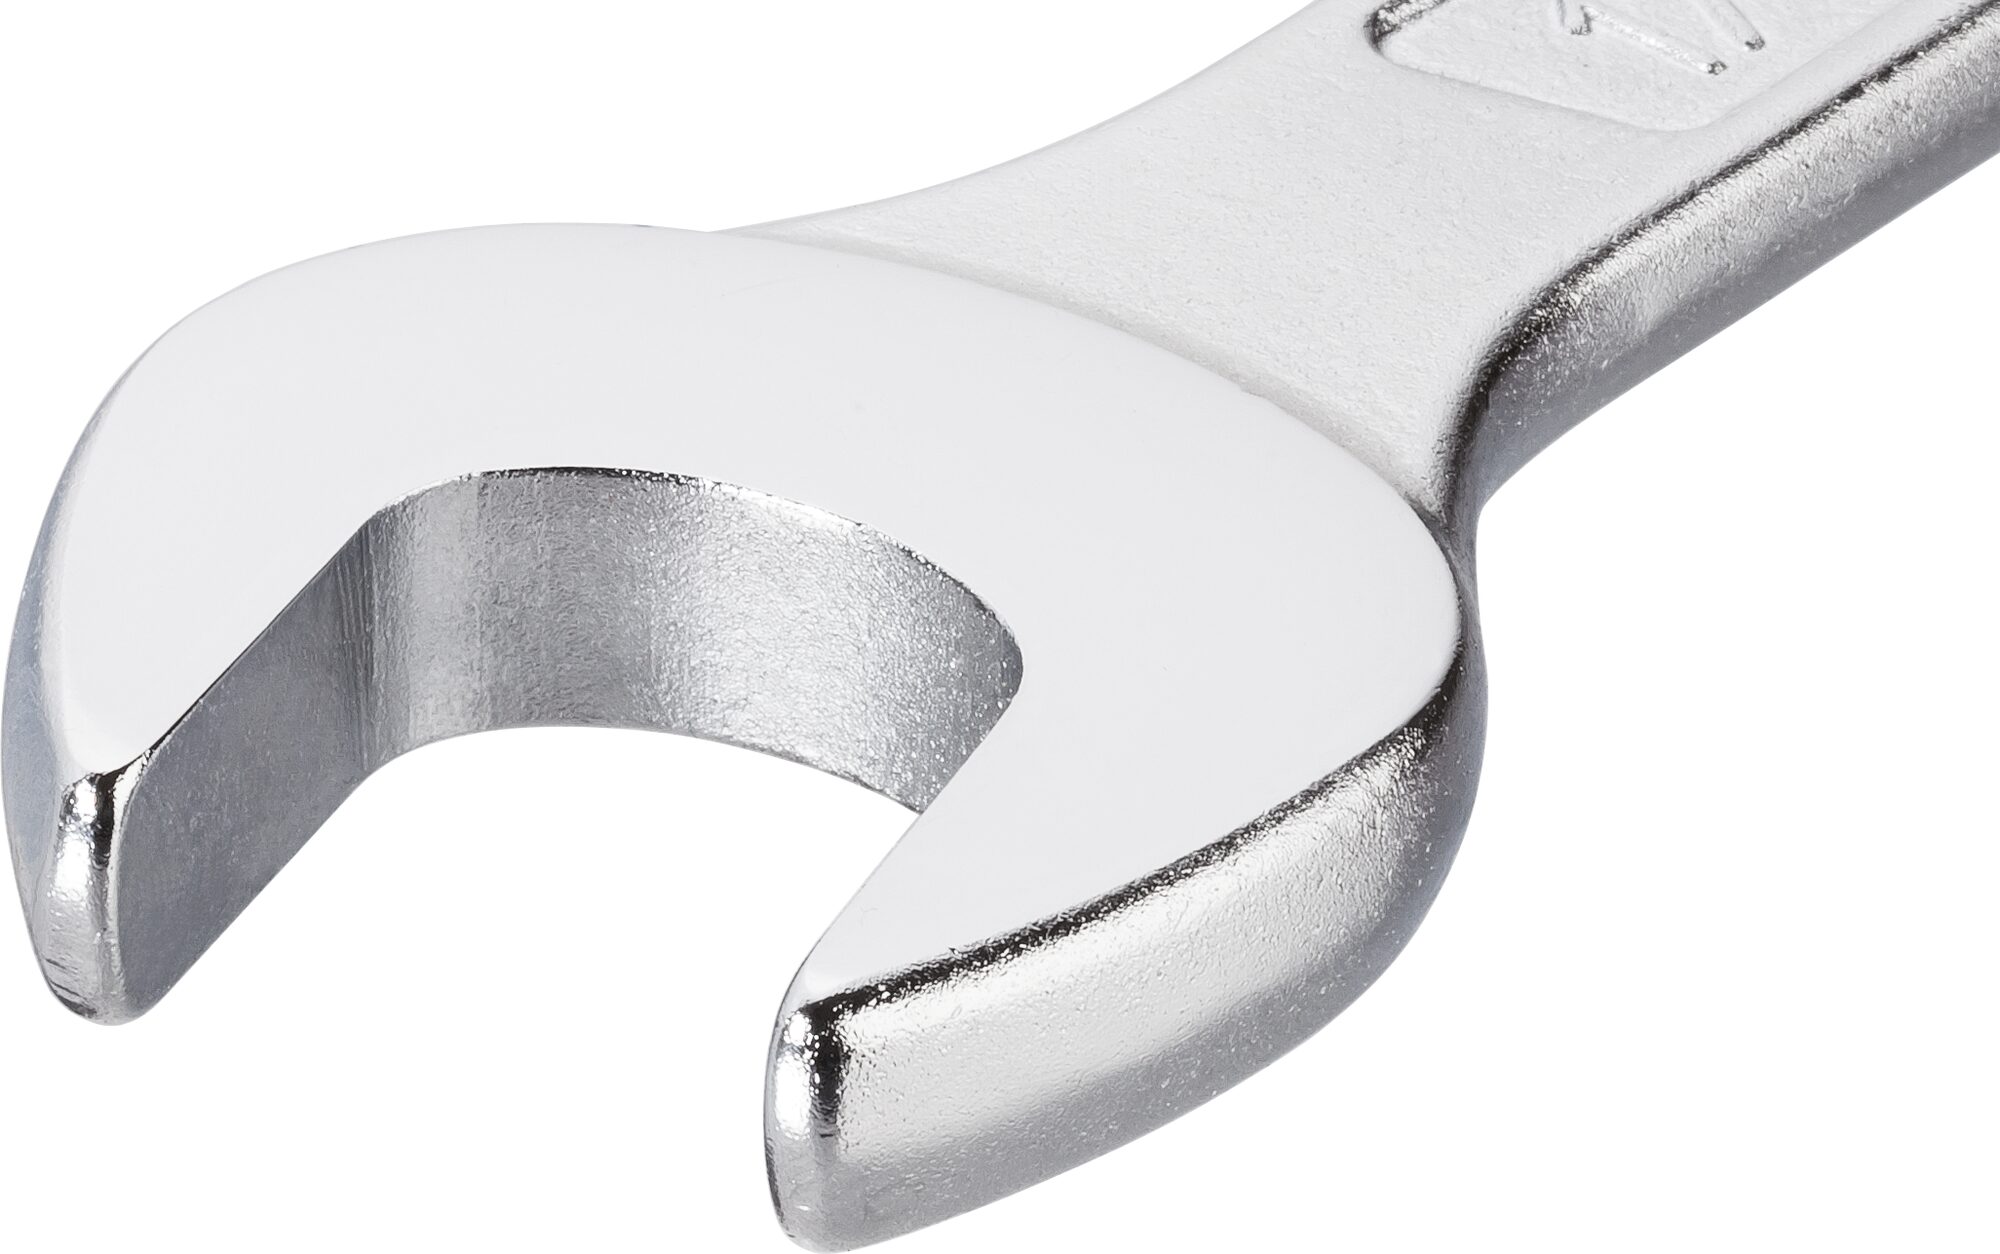 HAZET Ring-Maulschlüssel 600N-9 · Außen Doppel-Sechskant-Tractionsprofil · 9 mm